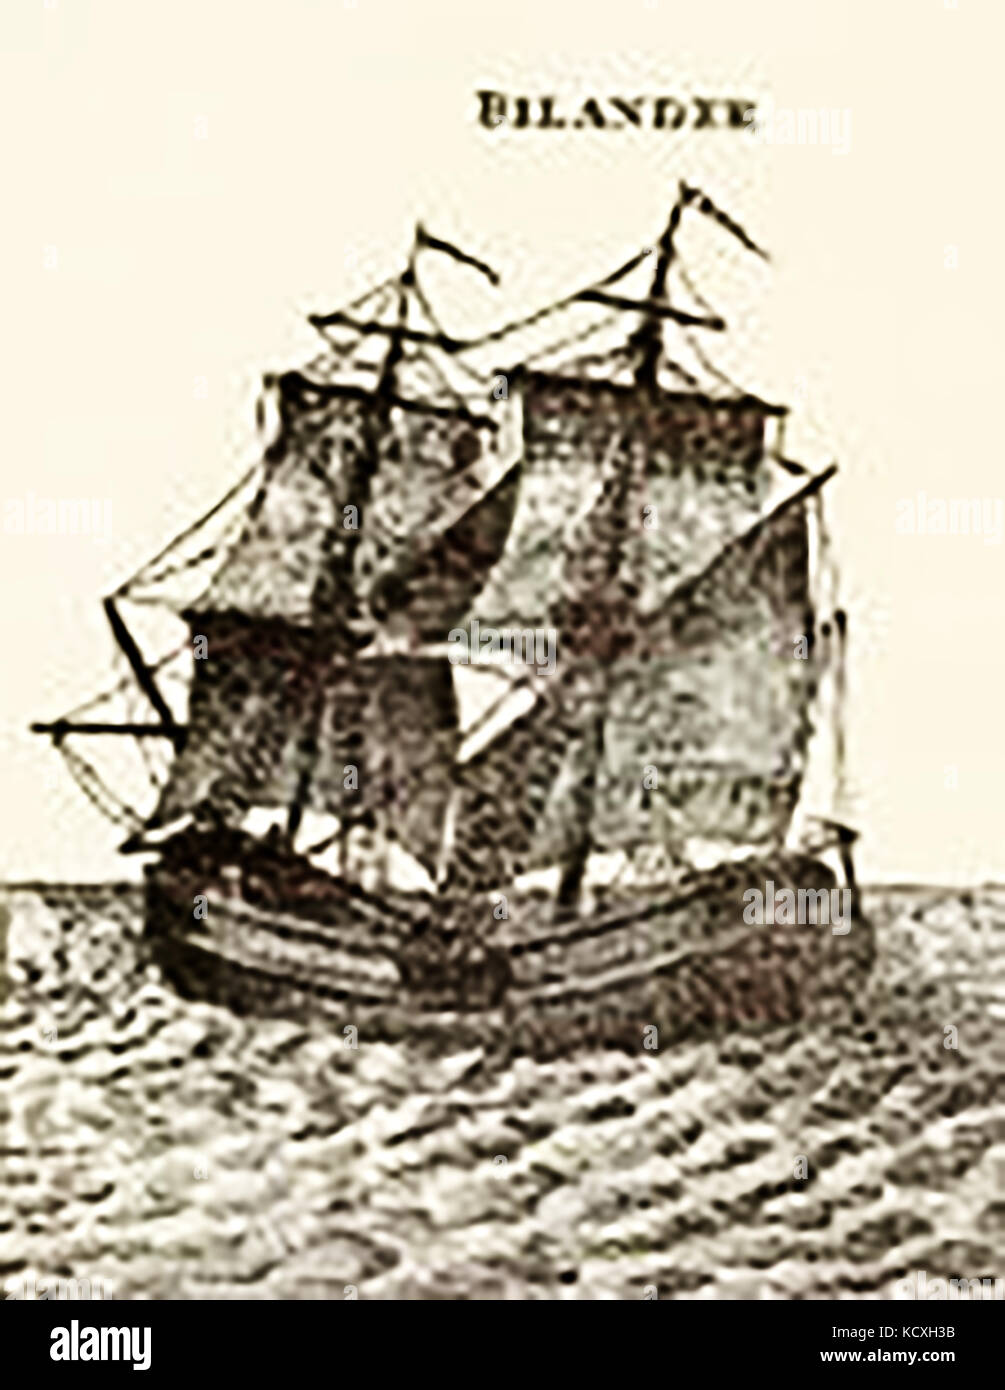 1794 Zeichnung von einem Billander aka bilander oder belandre (eine kleine europäische Handelsschiff mit zwei Masten, anders zu anderen zwei dreimaster Schiffe manipulierten) Stockfoto